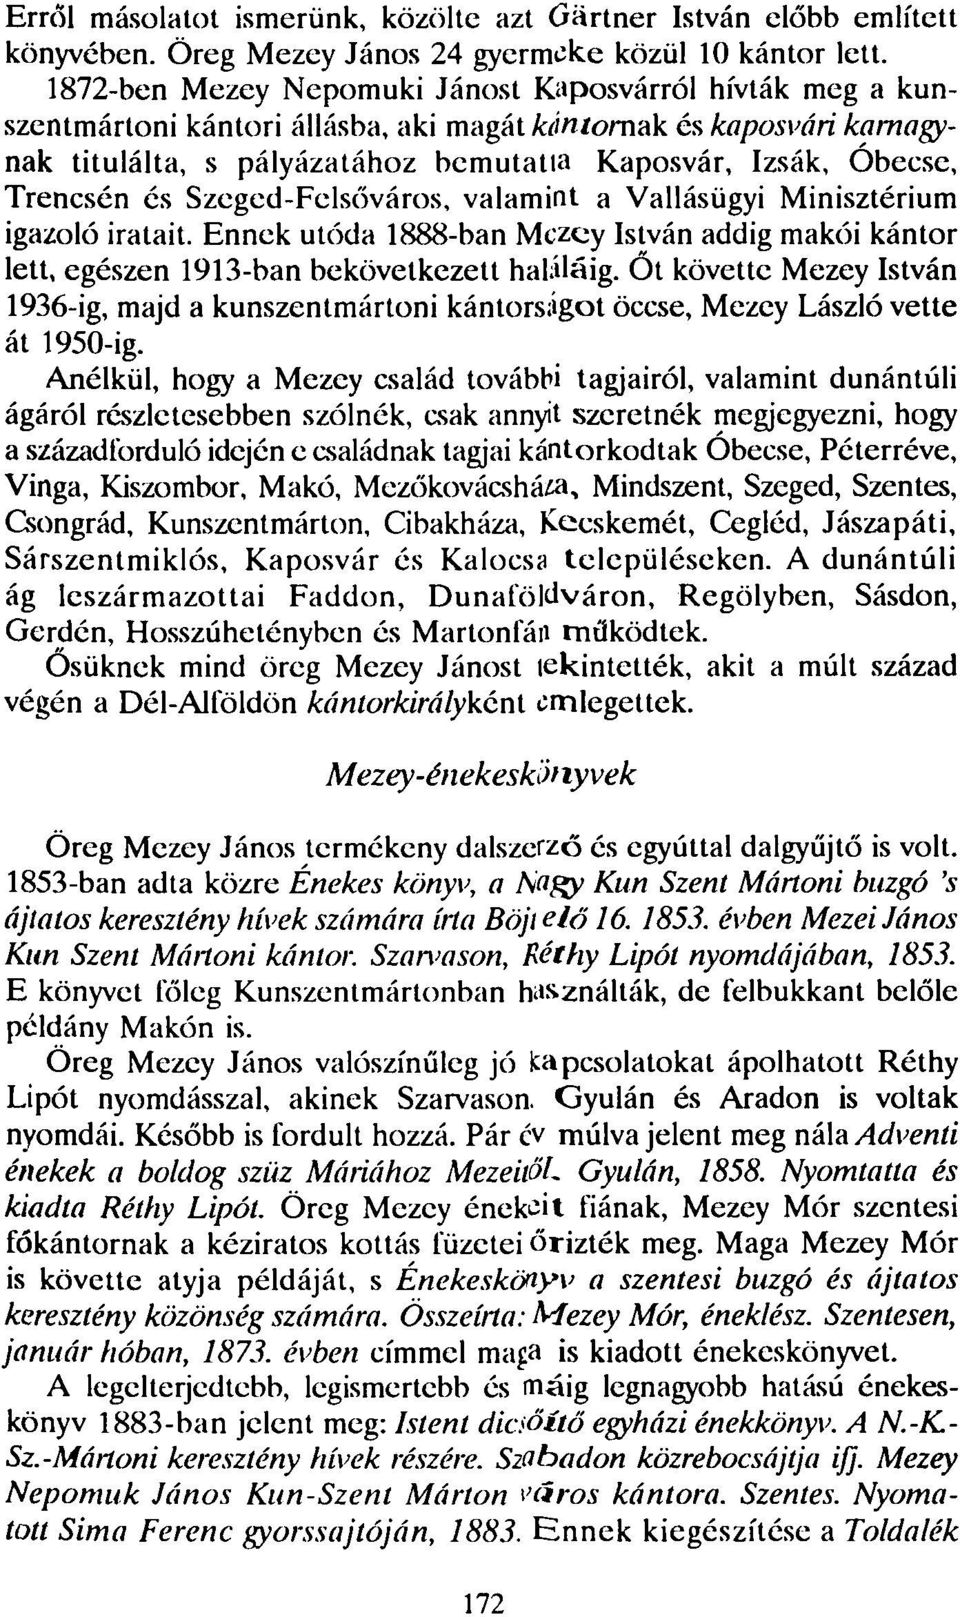 Trencsén és Szeged-Felsőváros, valamint a Vallásügyi Minisztérium igazoló iratait. Ennek utóda 1888-ban Mezey István addig makói kántor lett, egészen 1913-ban bekövetkezett haláláig.